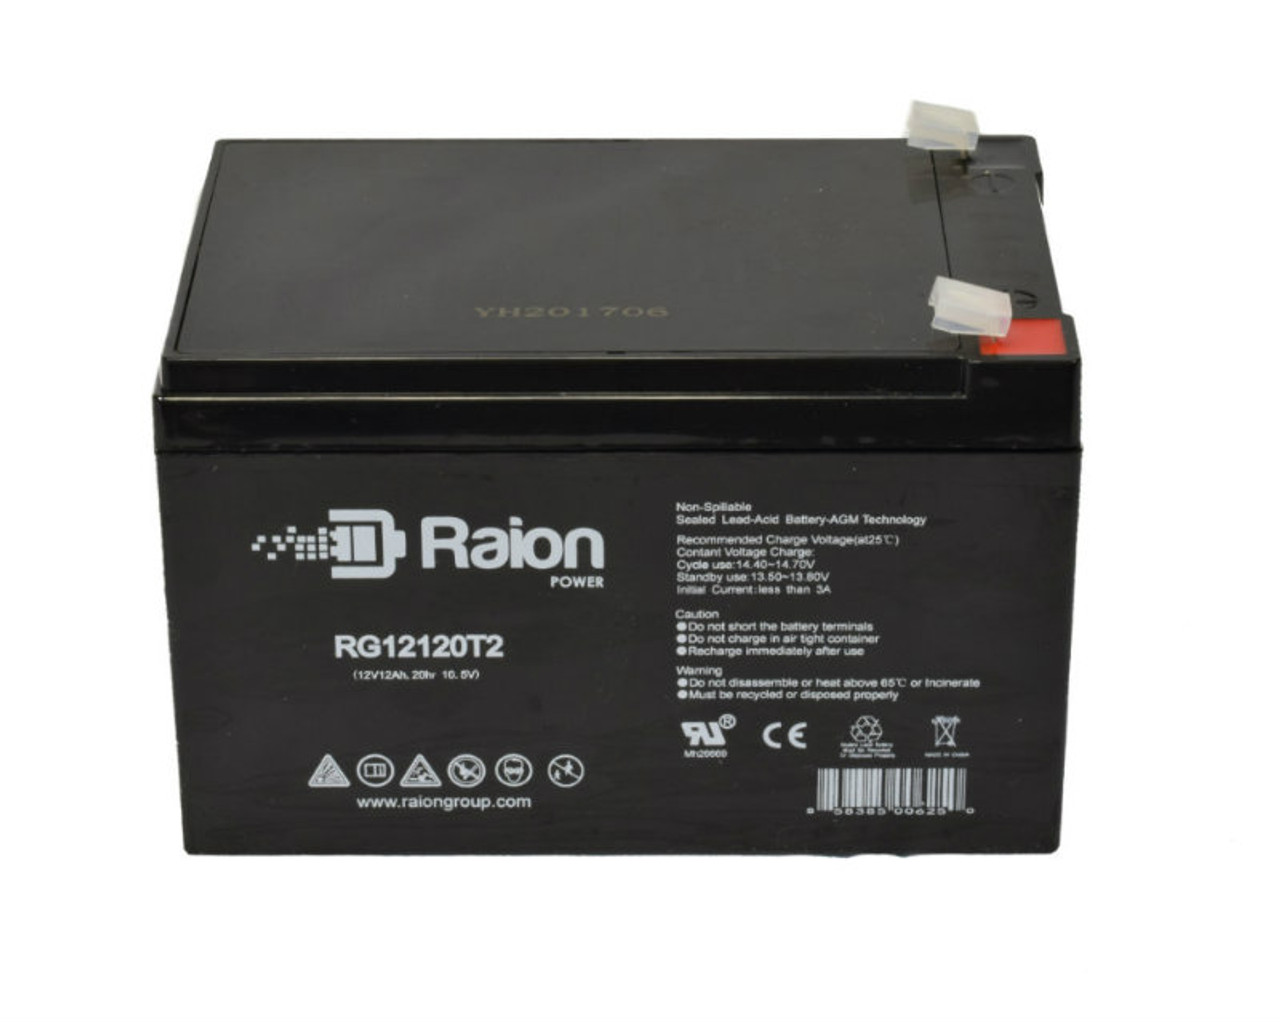 Raion Power RG12120T2 SLA Battery for Sentry PM12120